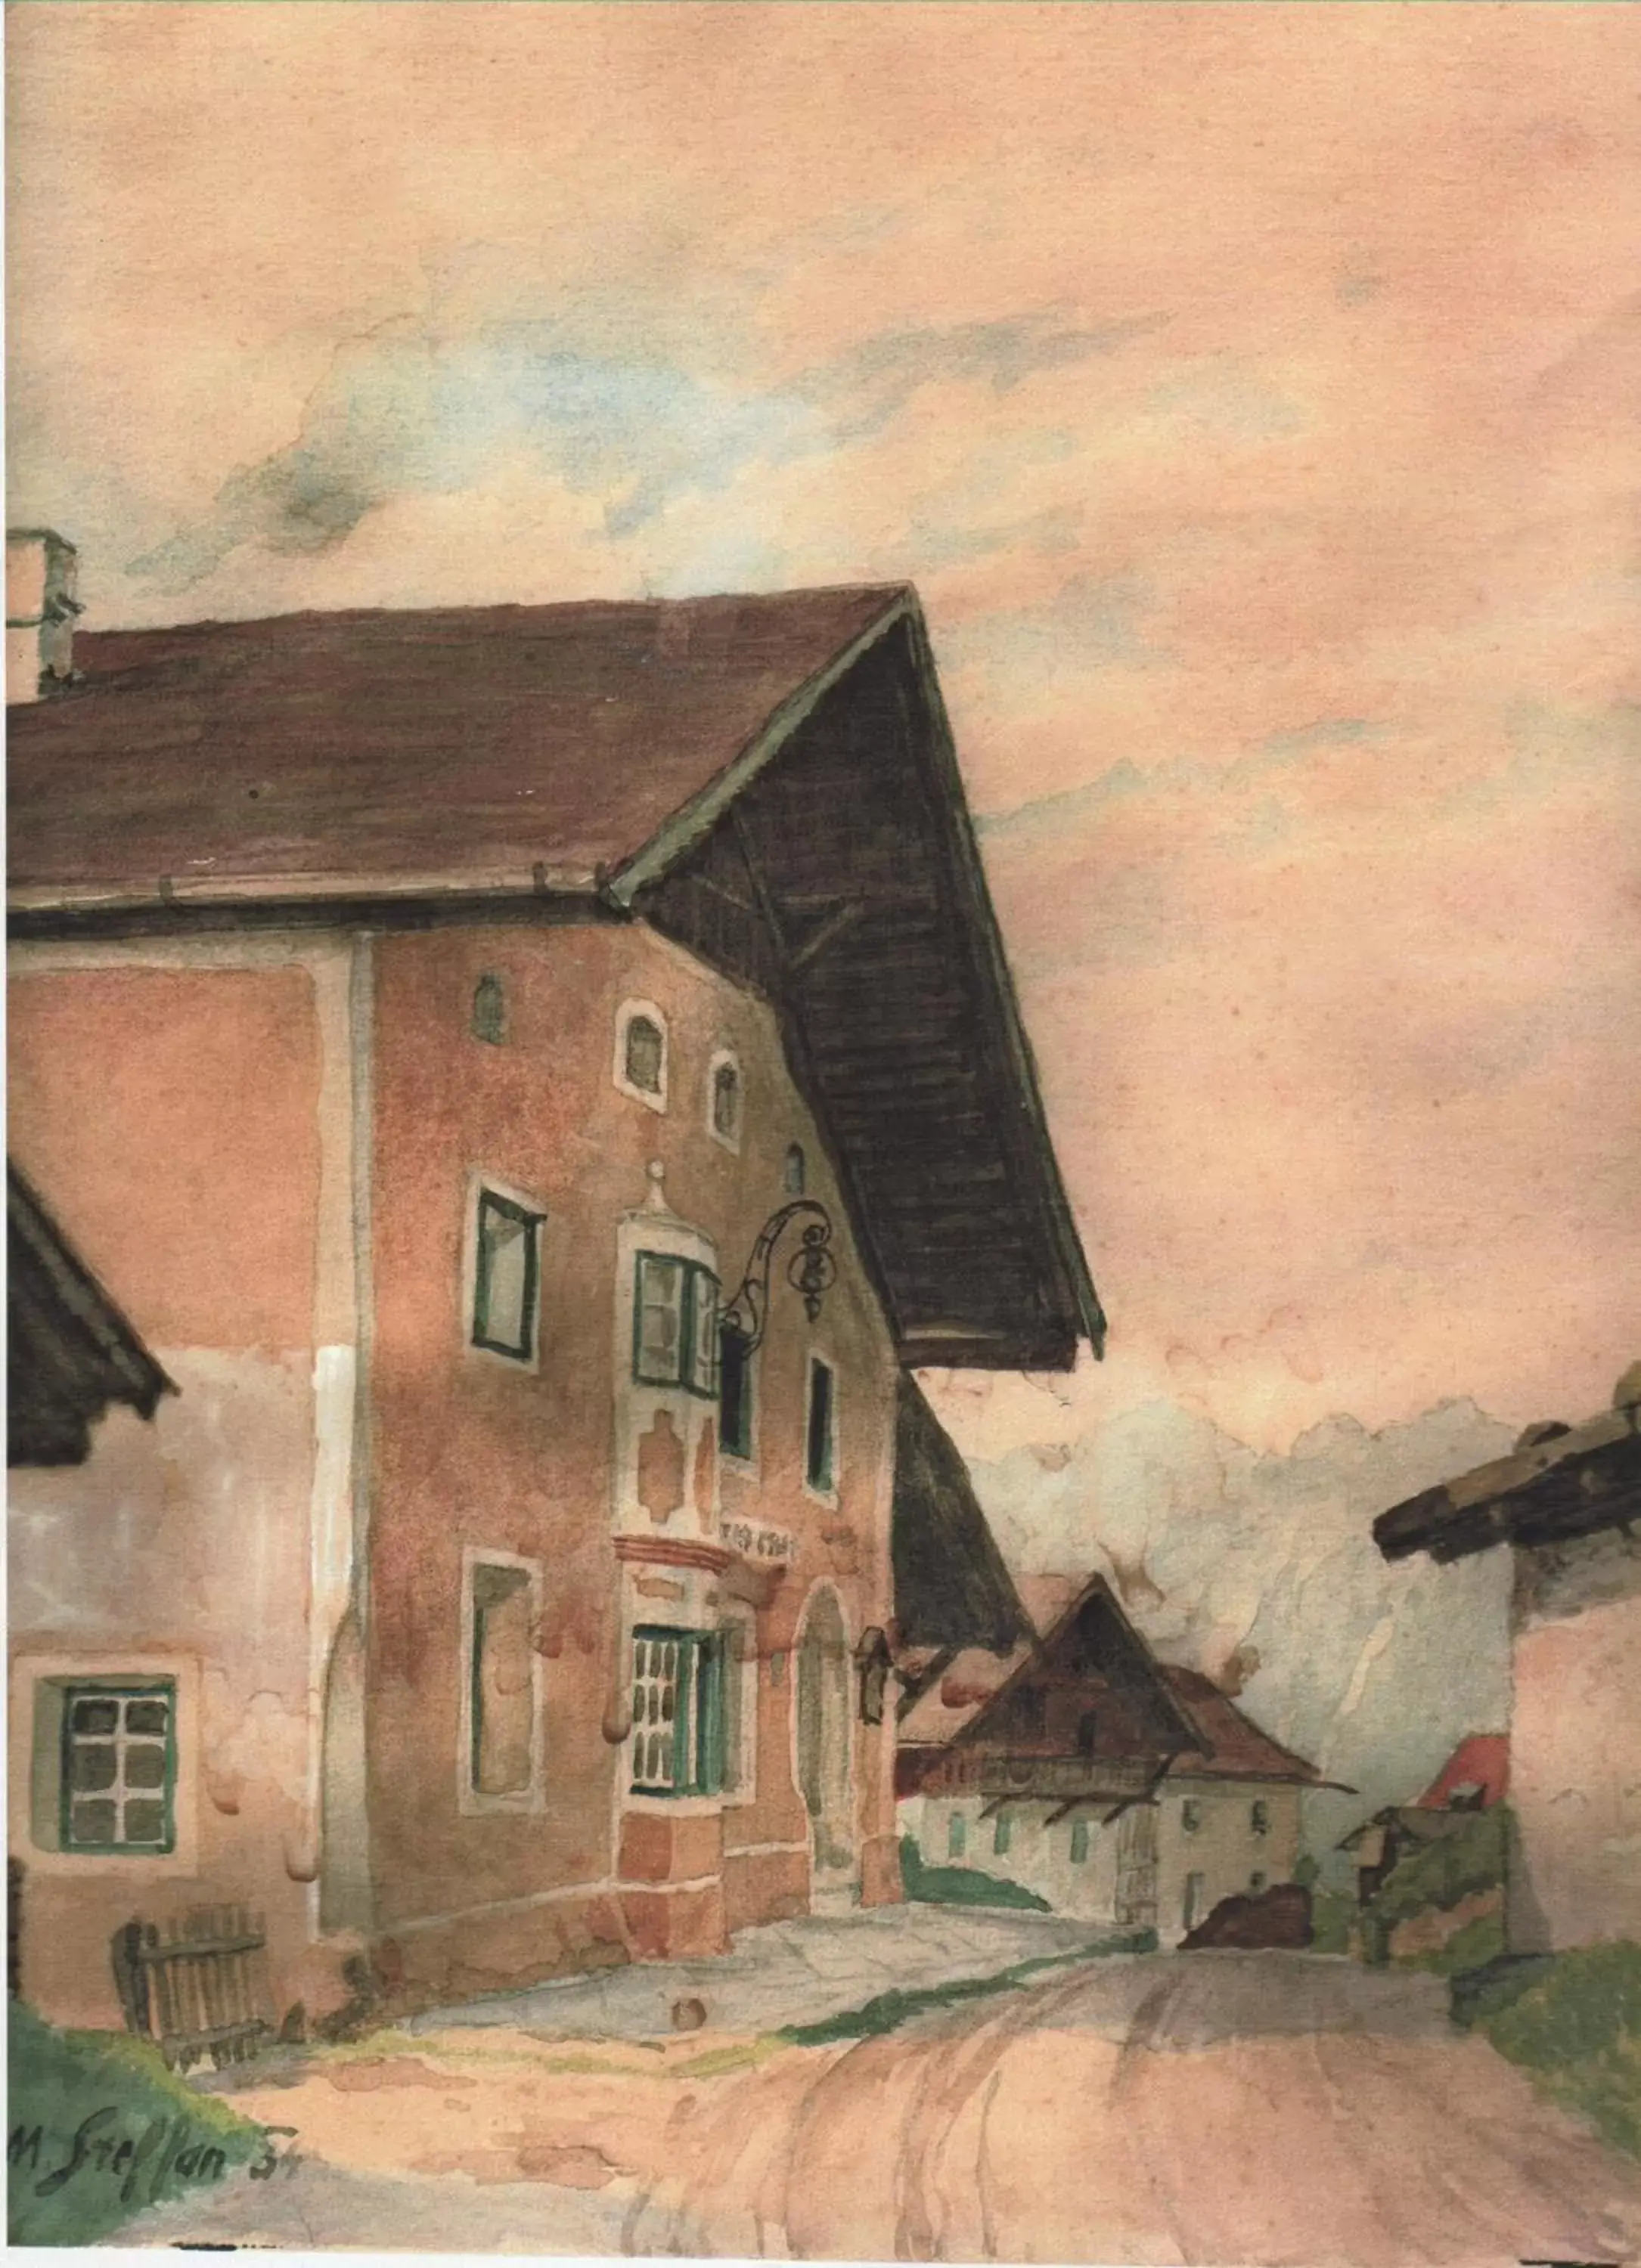 Property Building in Bärenwirth